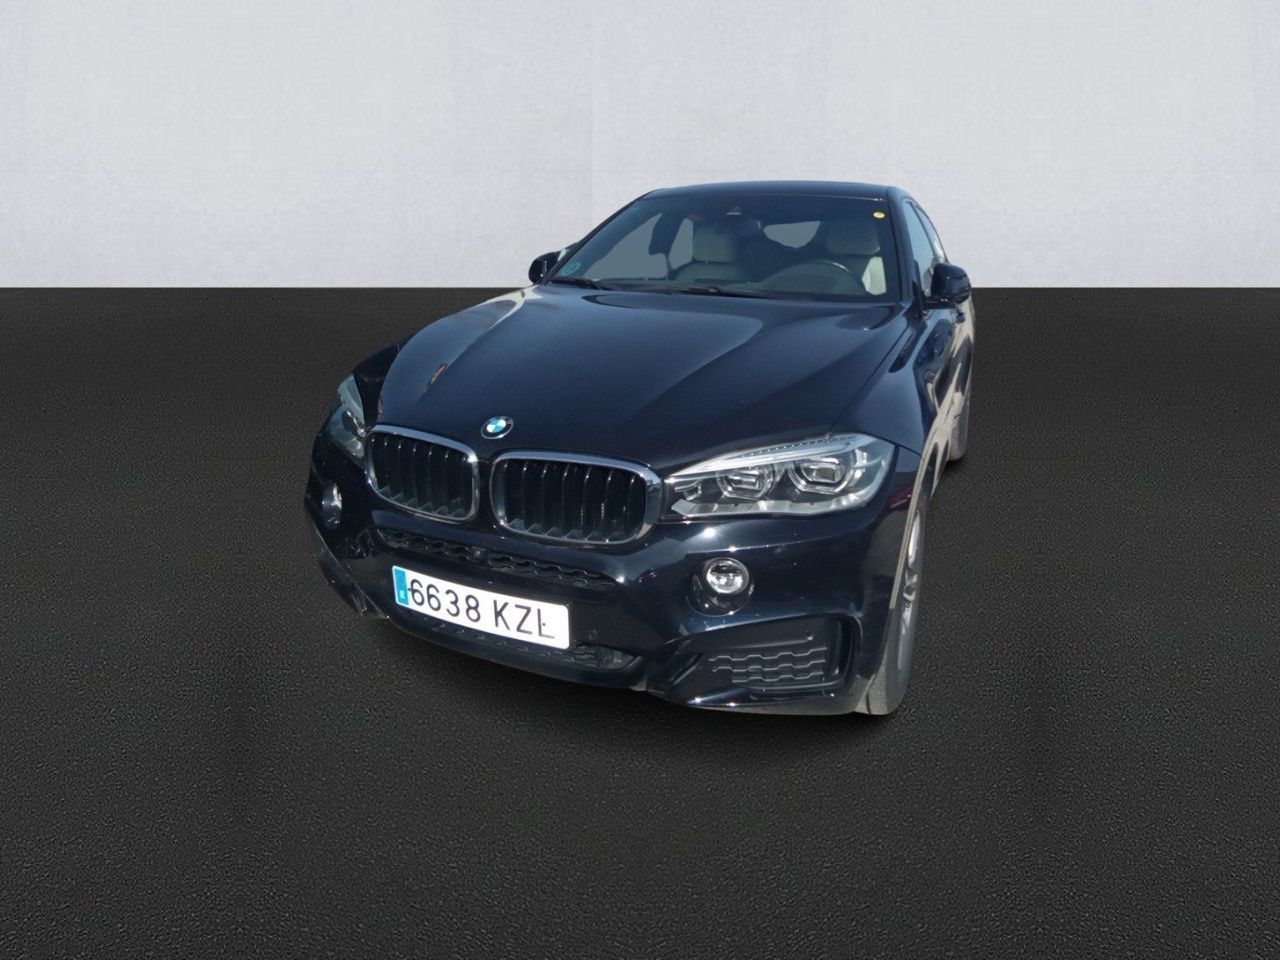 Renting BMW X6 segunda mano